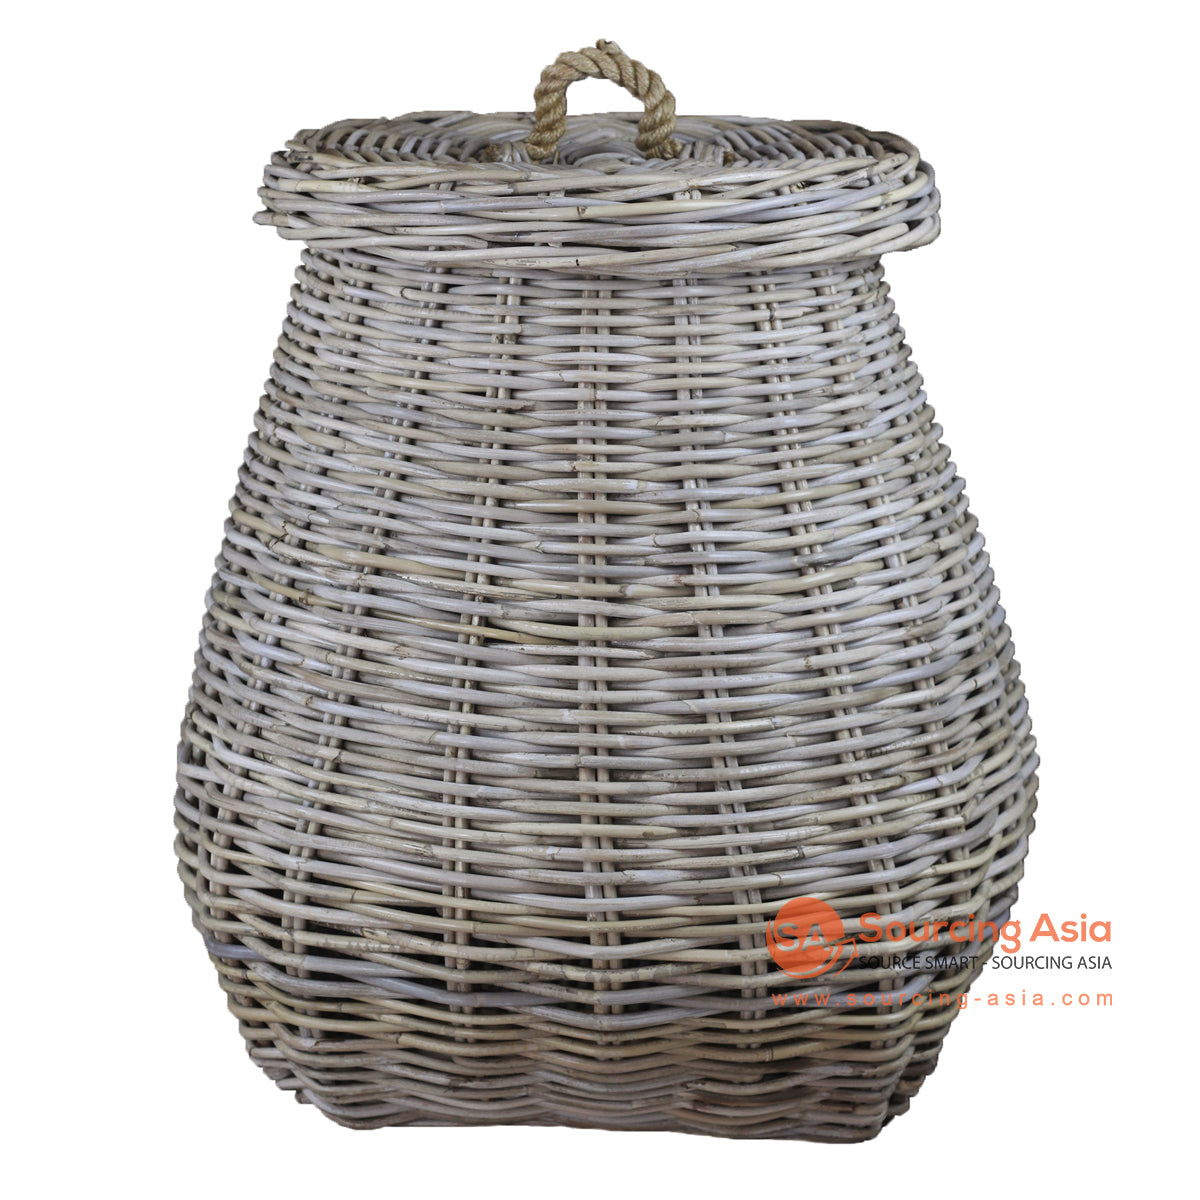 Bembridge Laundry Basket